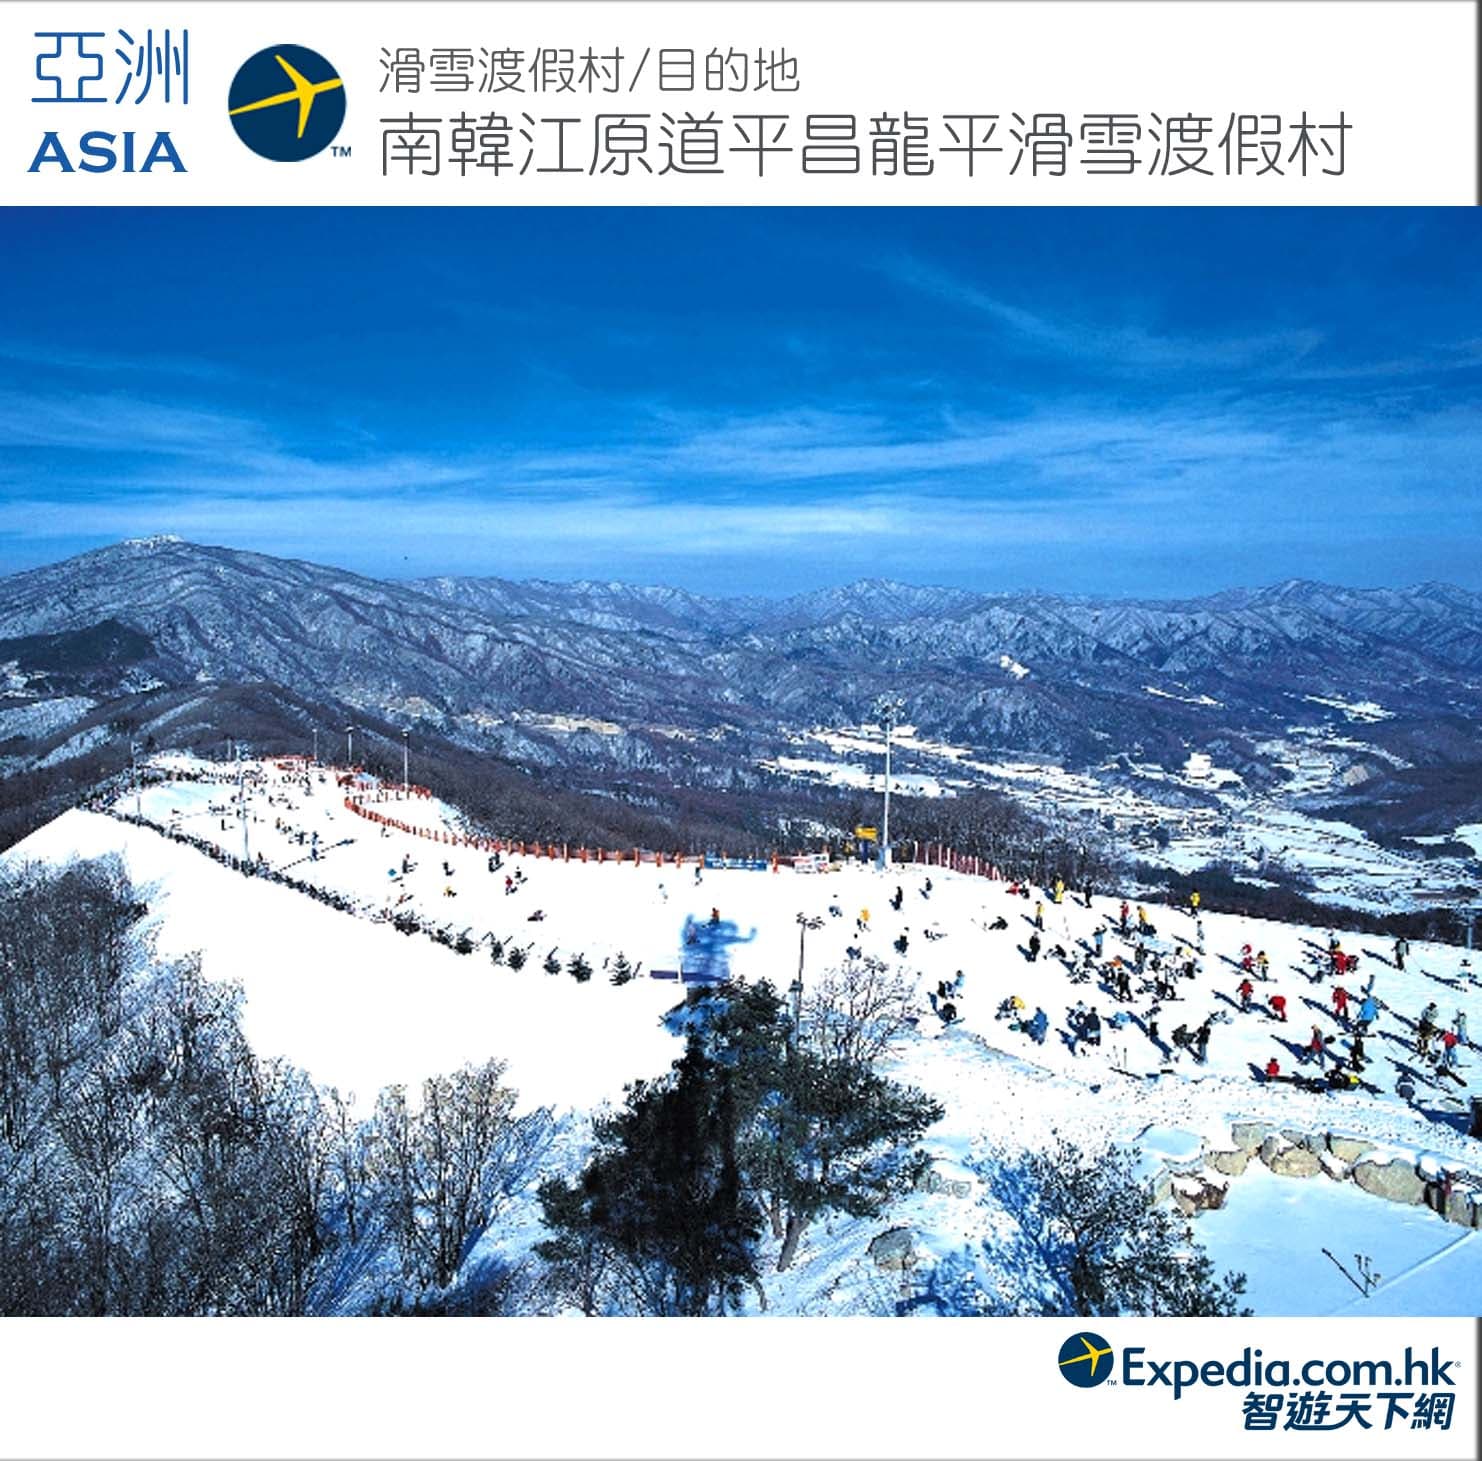 yong-pyong-ski-resort